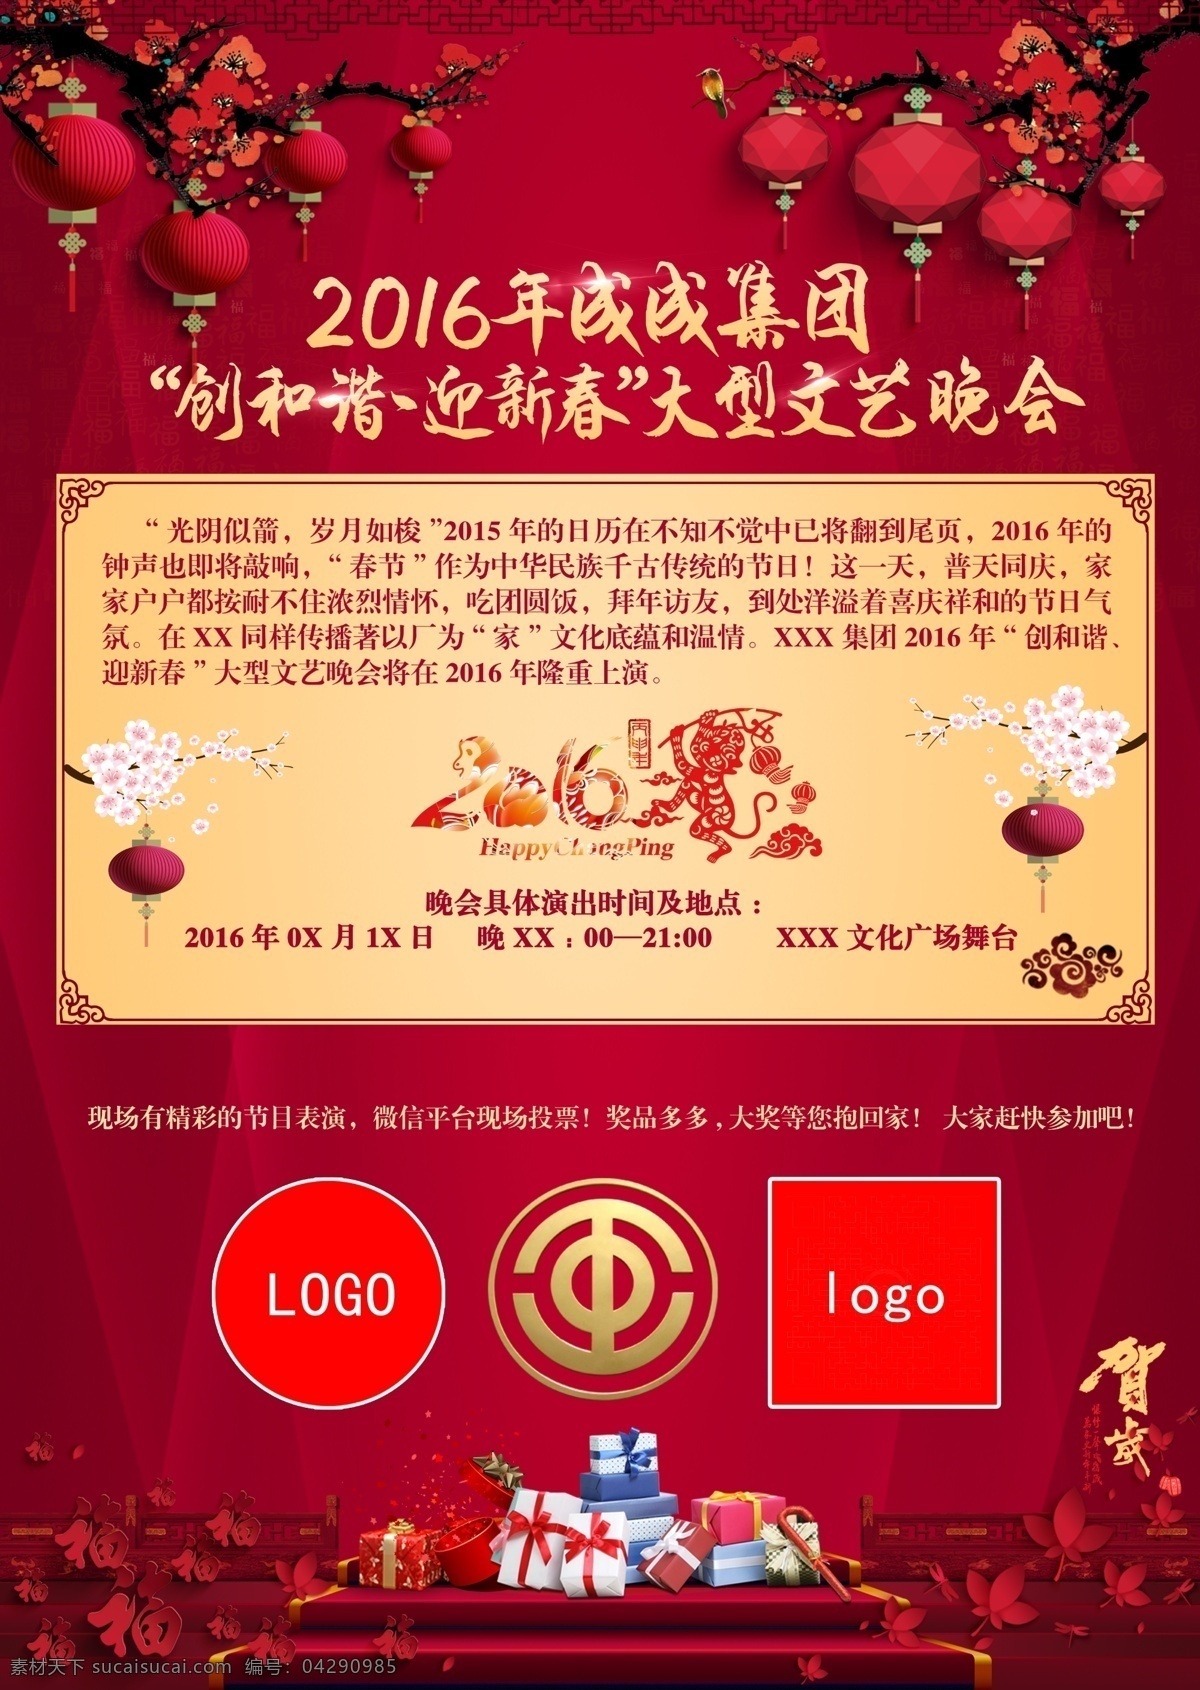 2016 年 大型 文艺 晚会 海报 红色